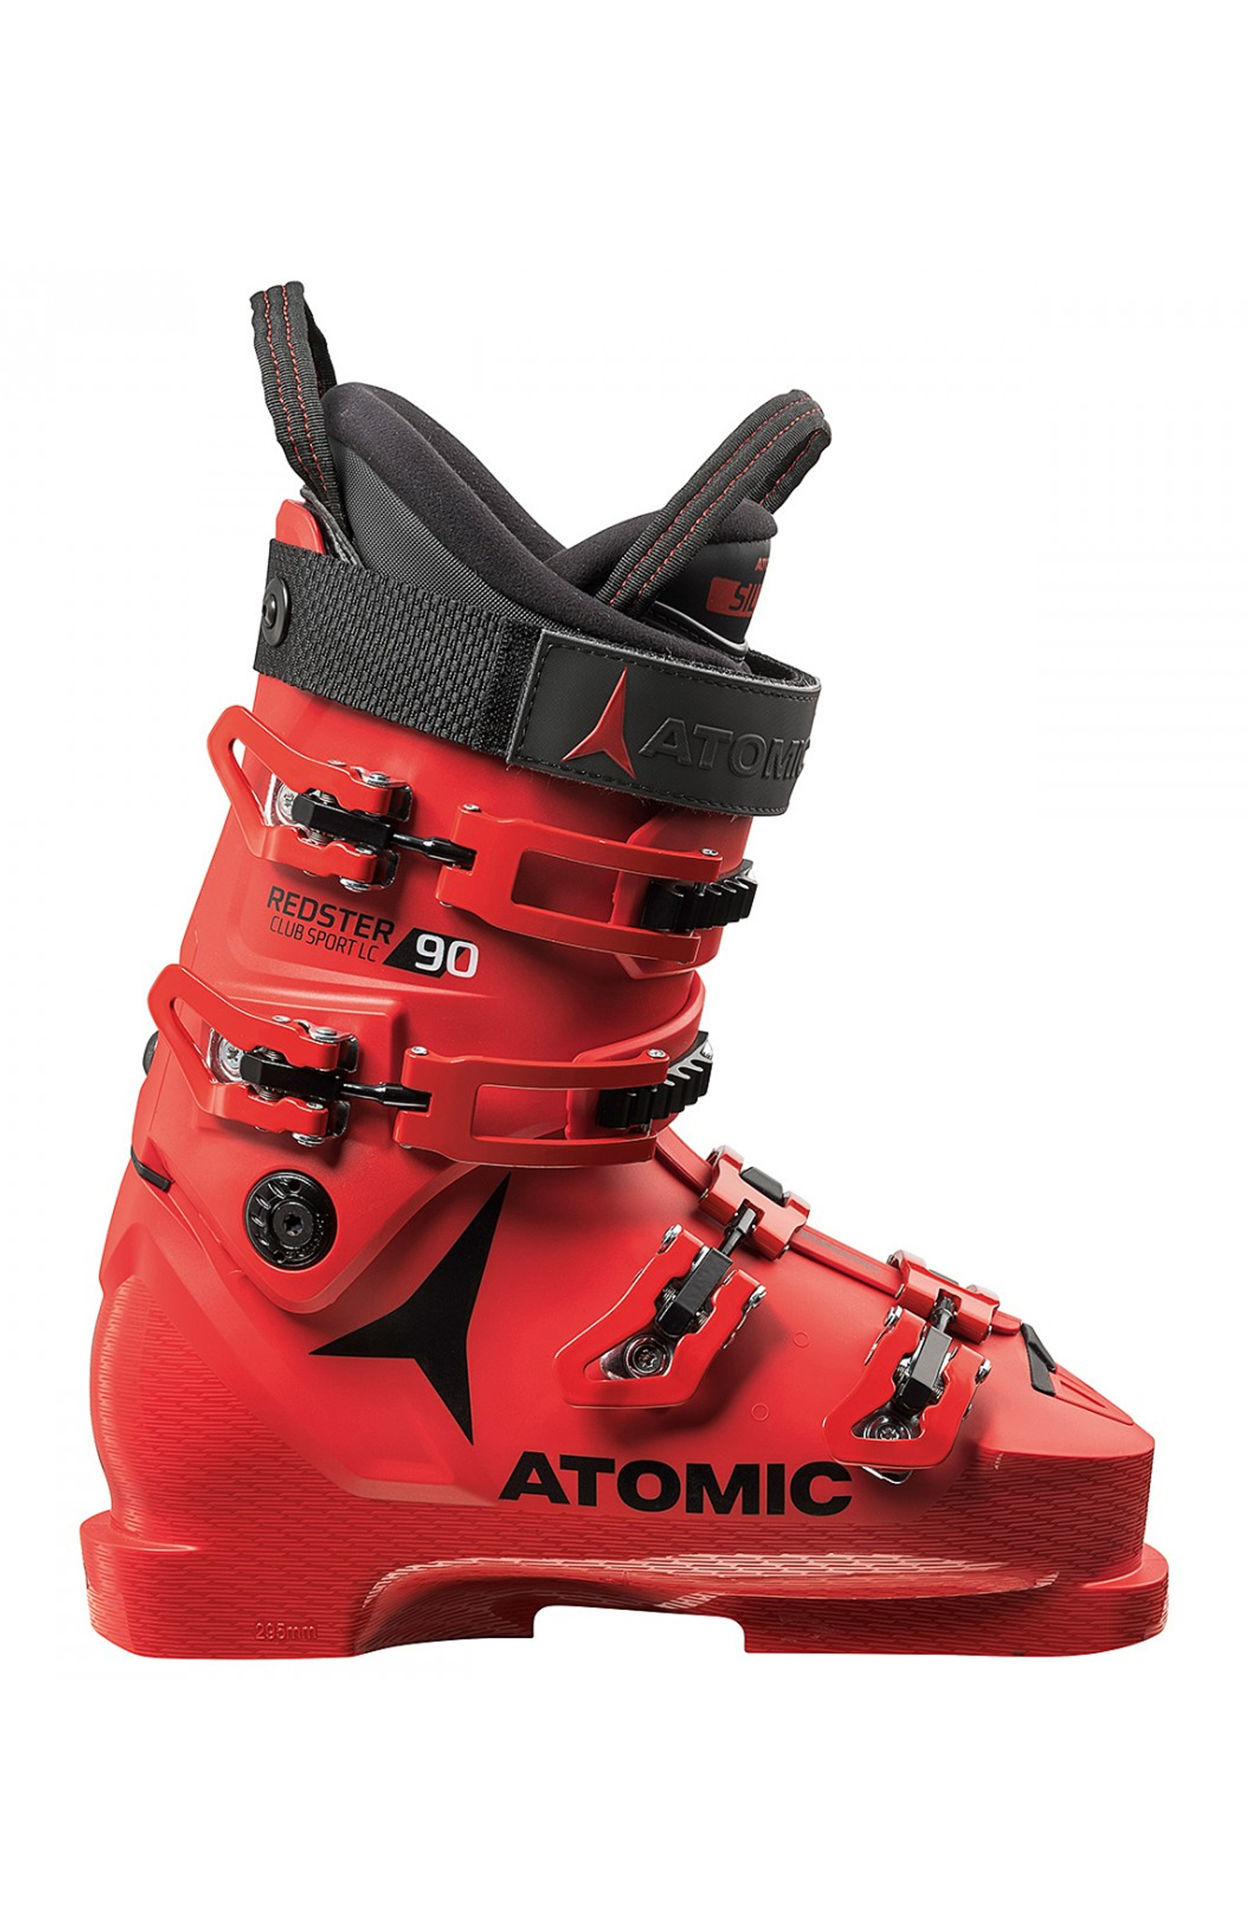 技術選】ATOMIC REDSTER CLUB SPORT130【テククラ】 - スキー